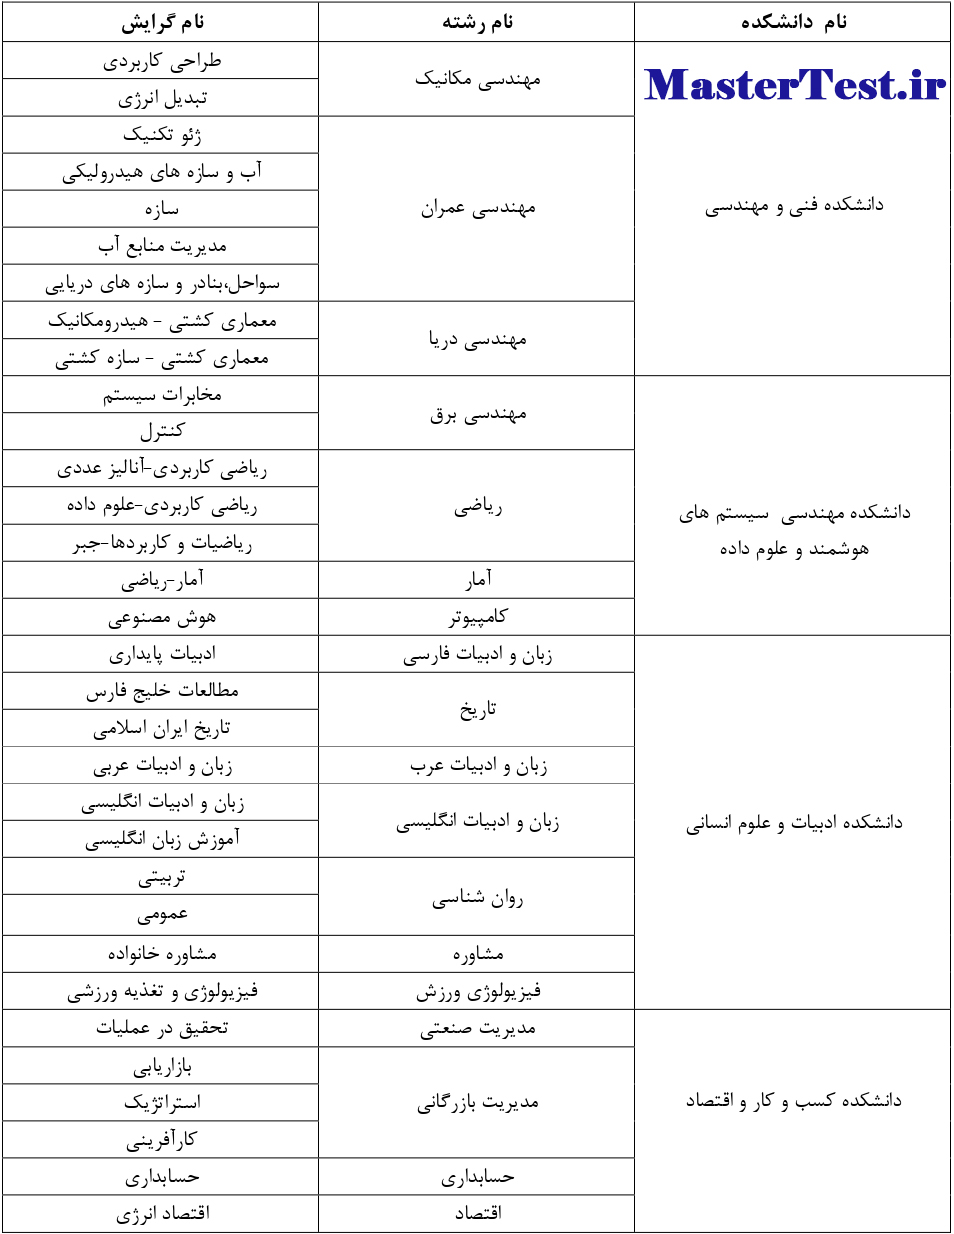 لیست رشته های کارشناسی ارشد بدون آزمون دانشگاه خلیج فارس 1403